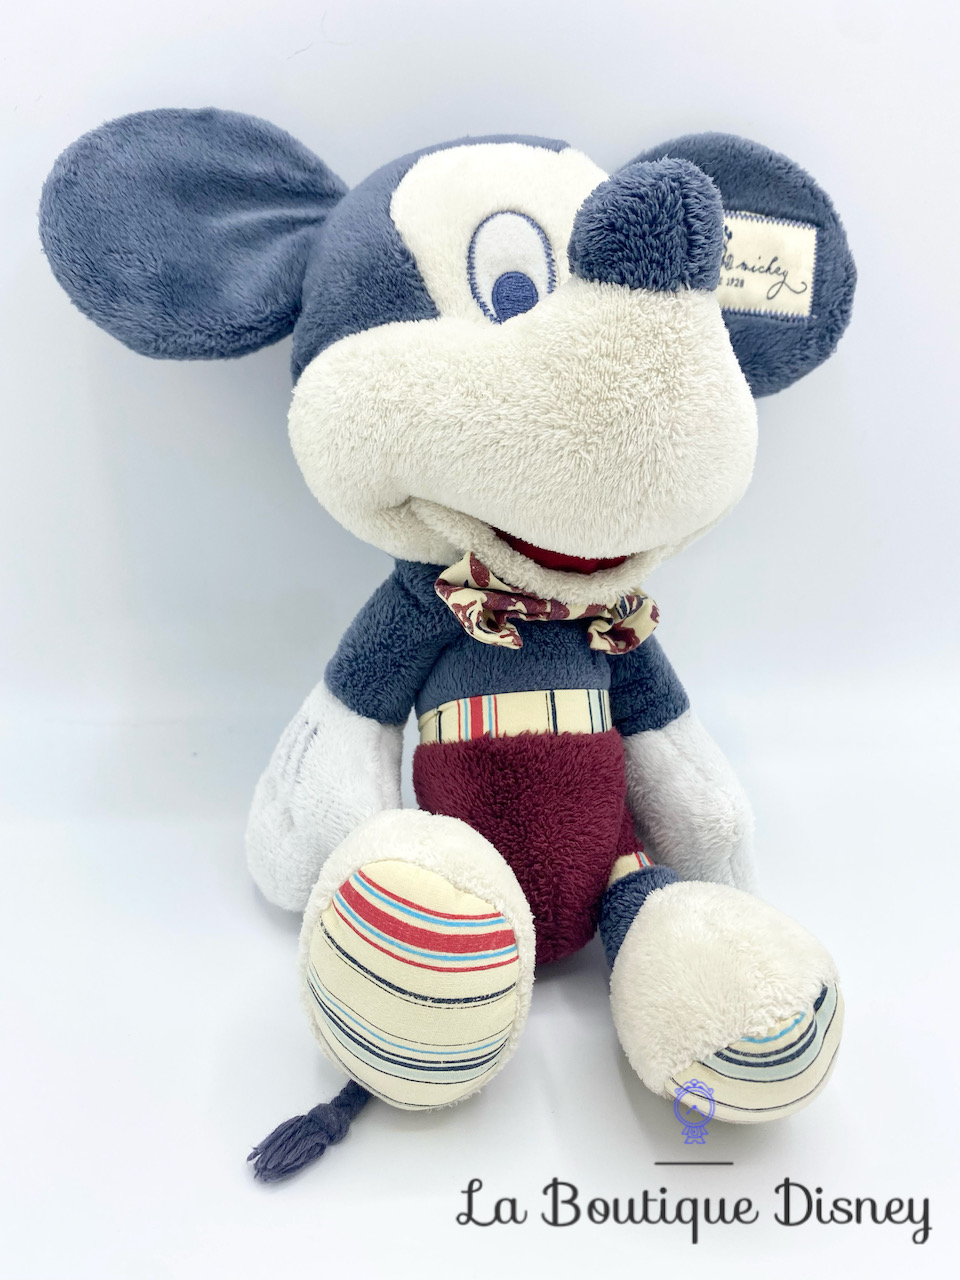 Peluche Mickey Euro Disney - jouets rétro jeux de société figurines et  objets vintage